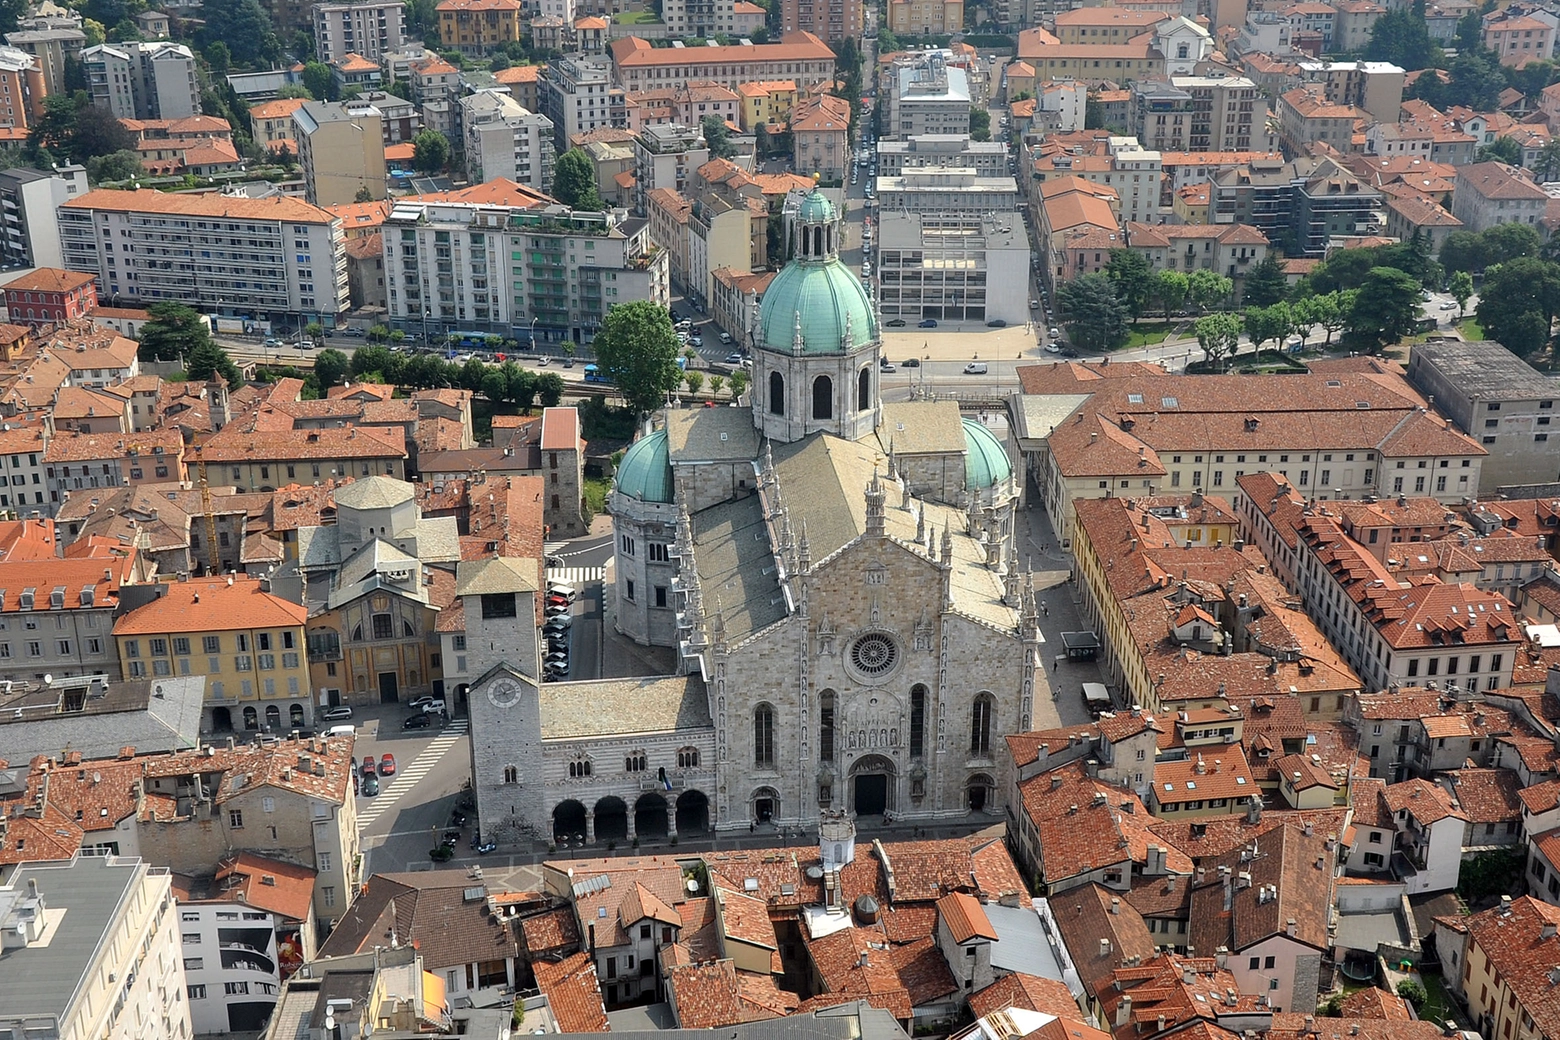 Il Duomo di Como